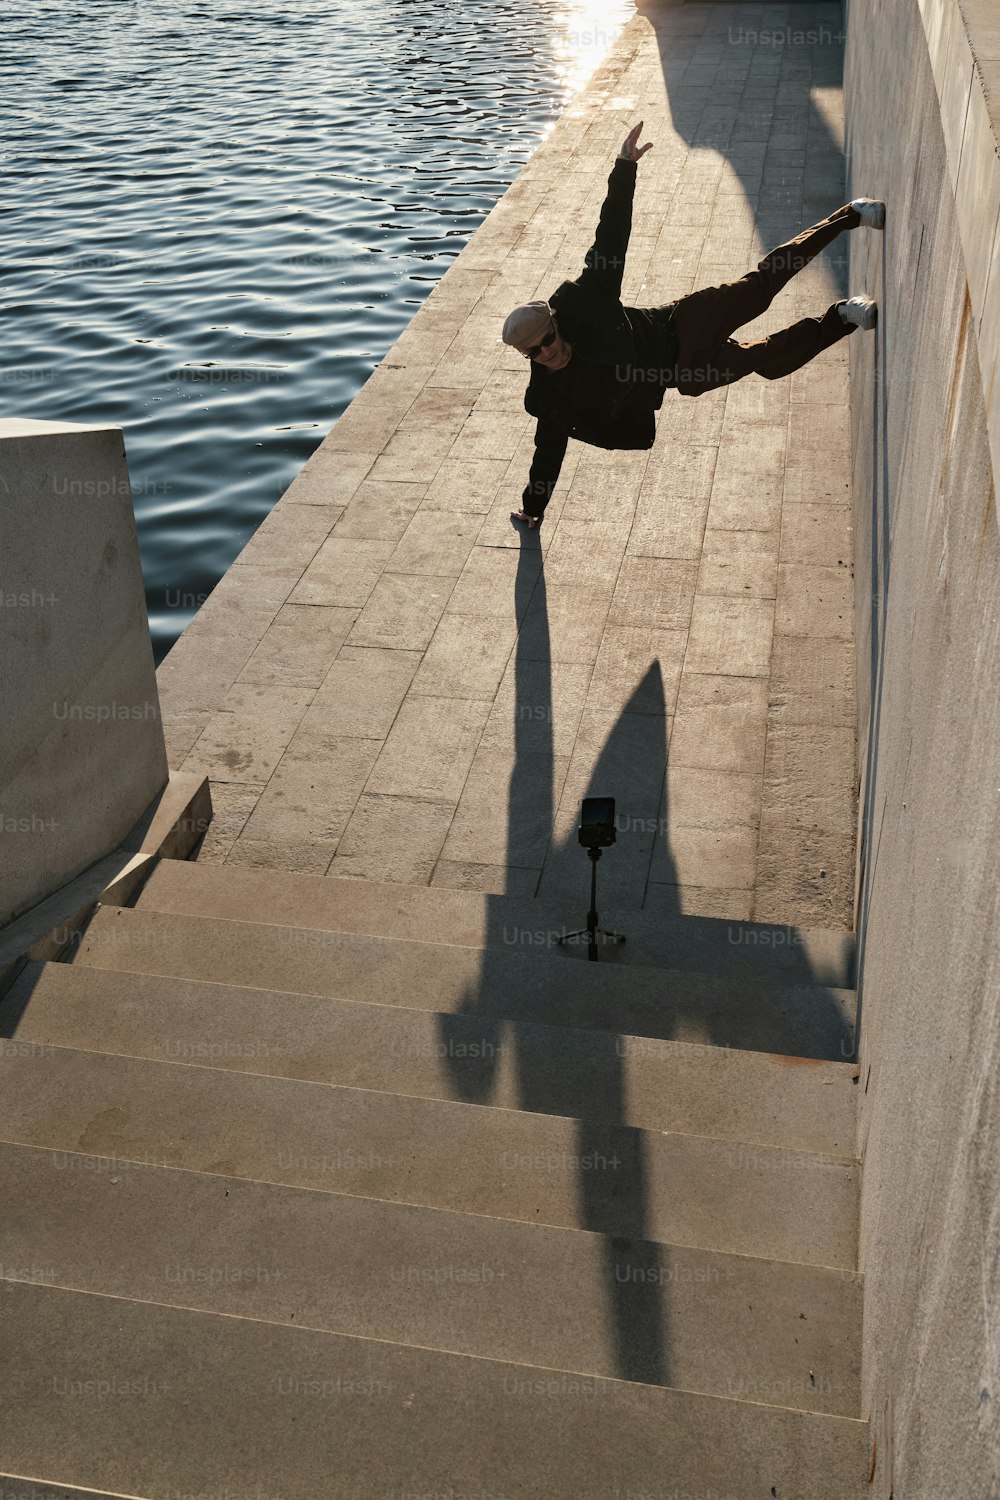 ein mann, der einen trick auf einem skateboard eine treppe hinunter macht